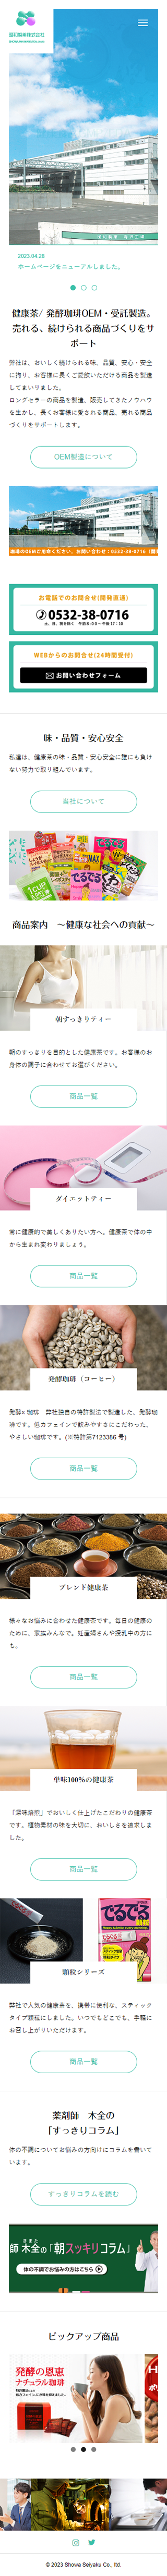 昭和製薬株式会社コーポレートサイトトップページ